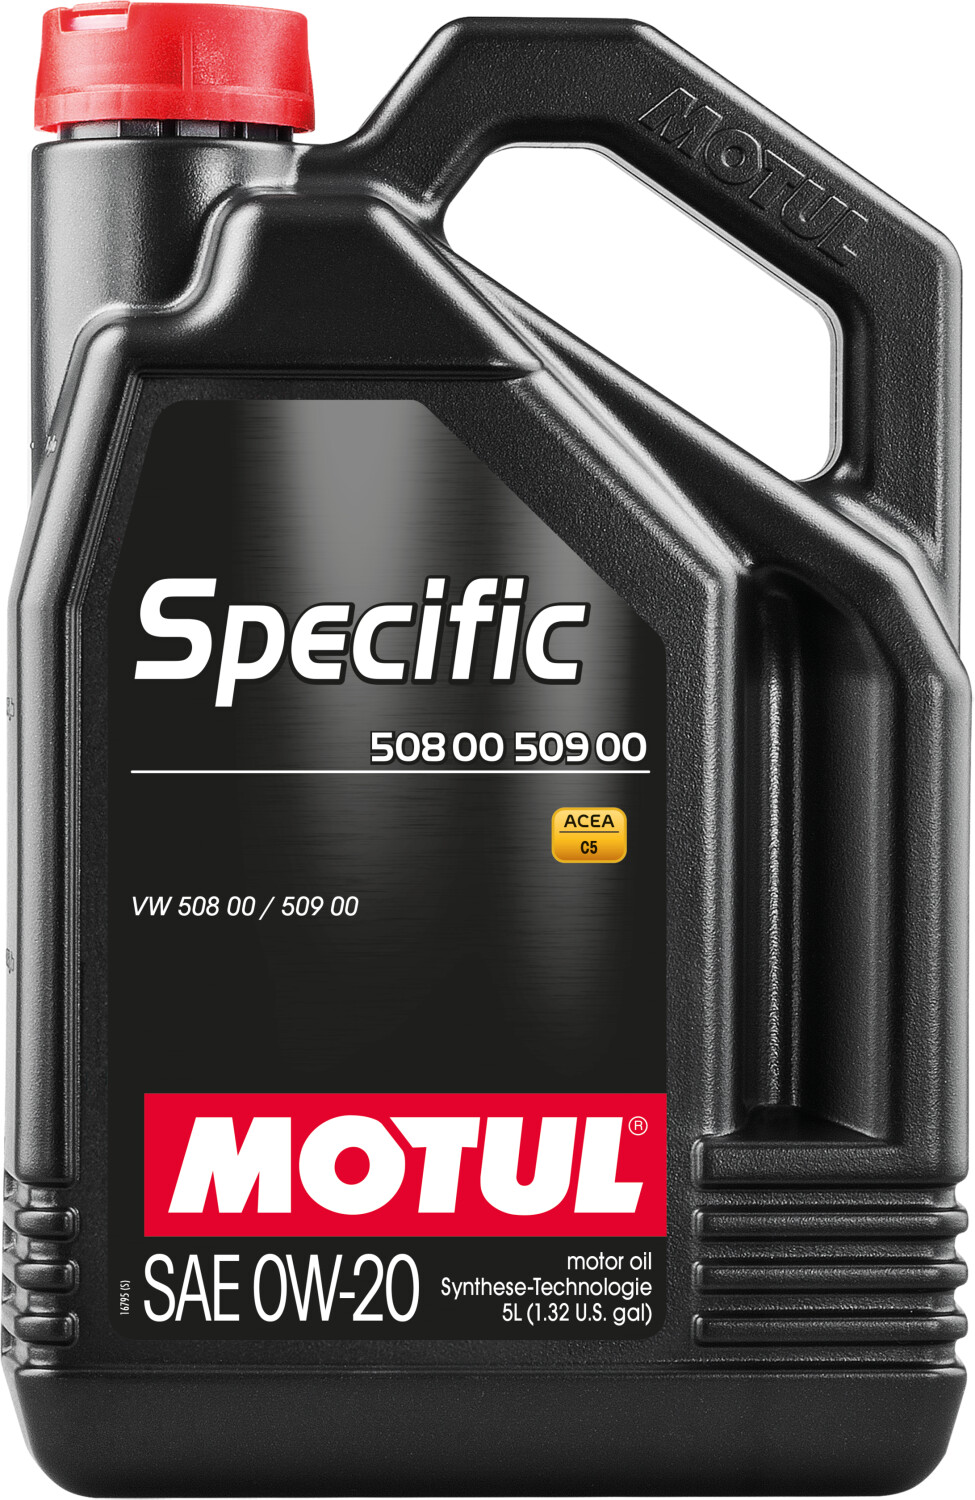 Motul Specific 508 00 509 00 0W20 (5 l) au meilleur prix sur idealo.fr